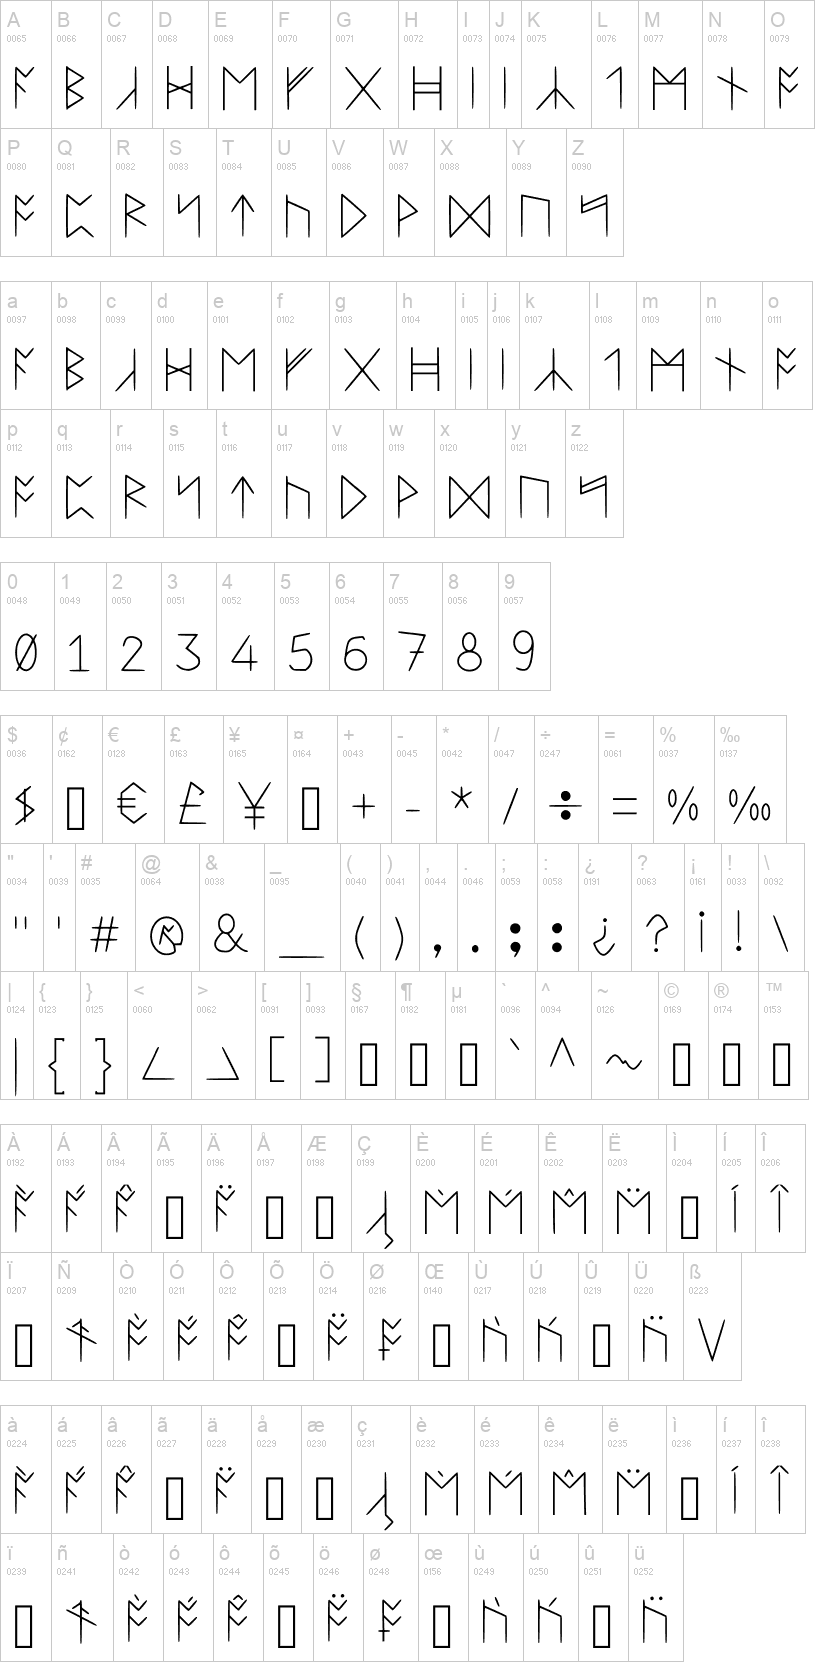 Standard Celtic Rune Extended